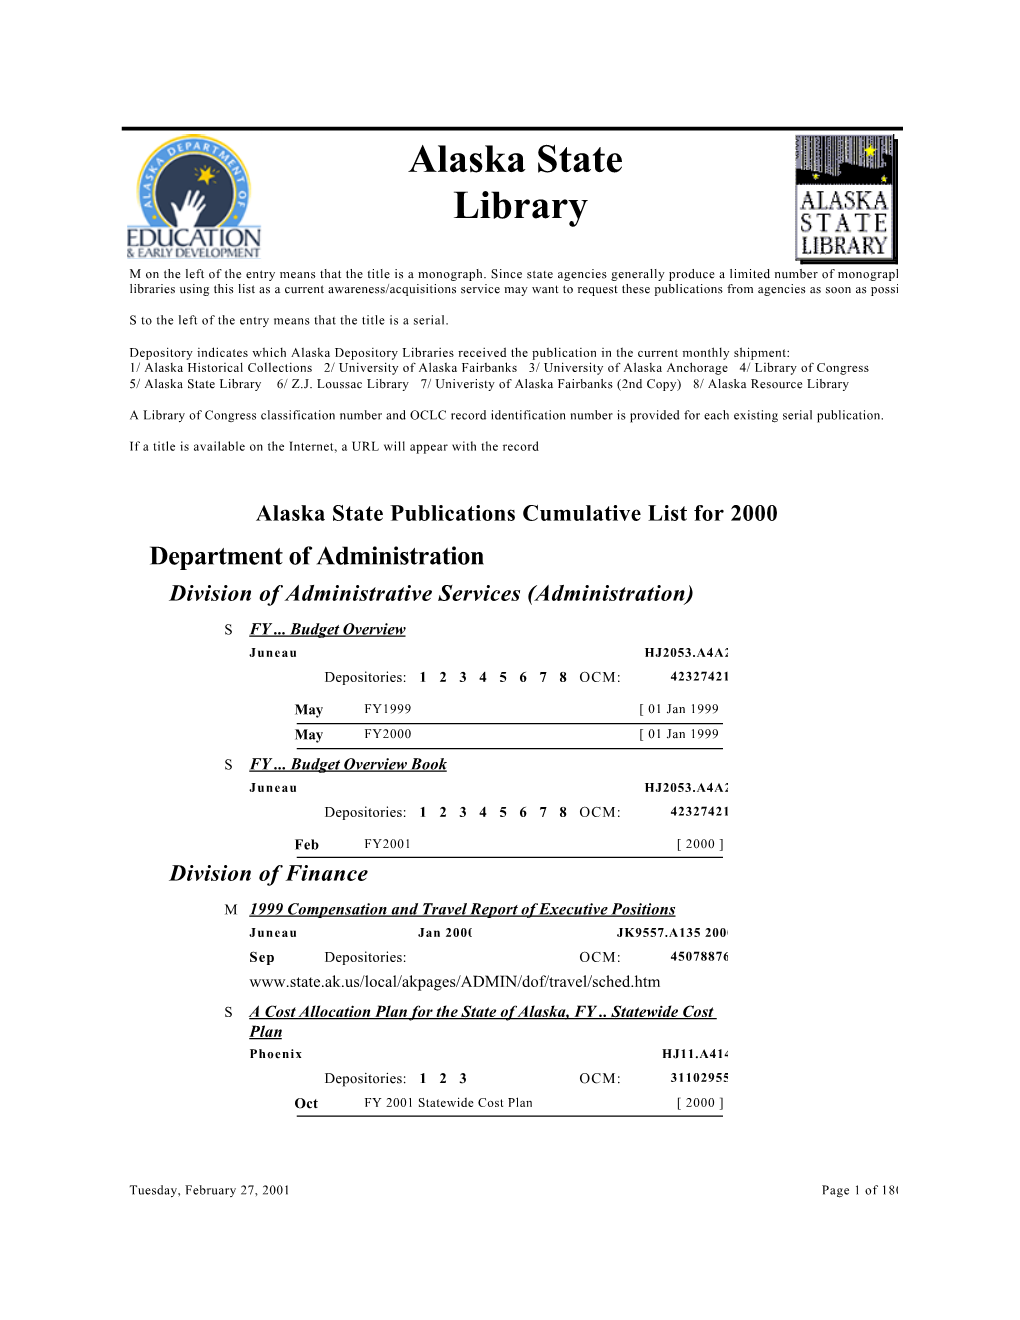 2000 Cumulative State Publications List